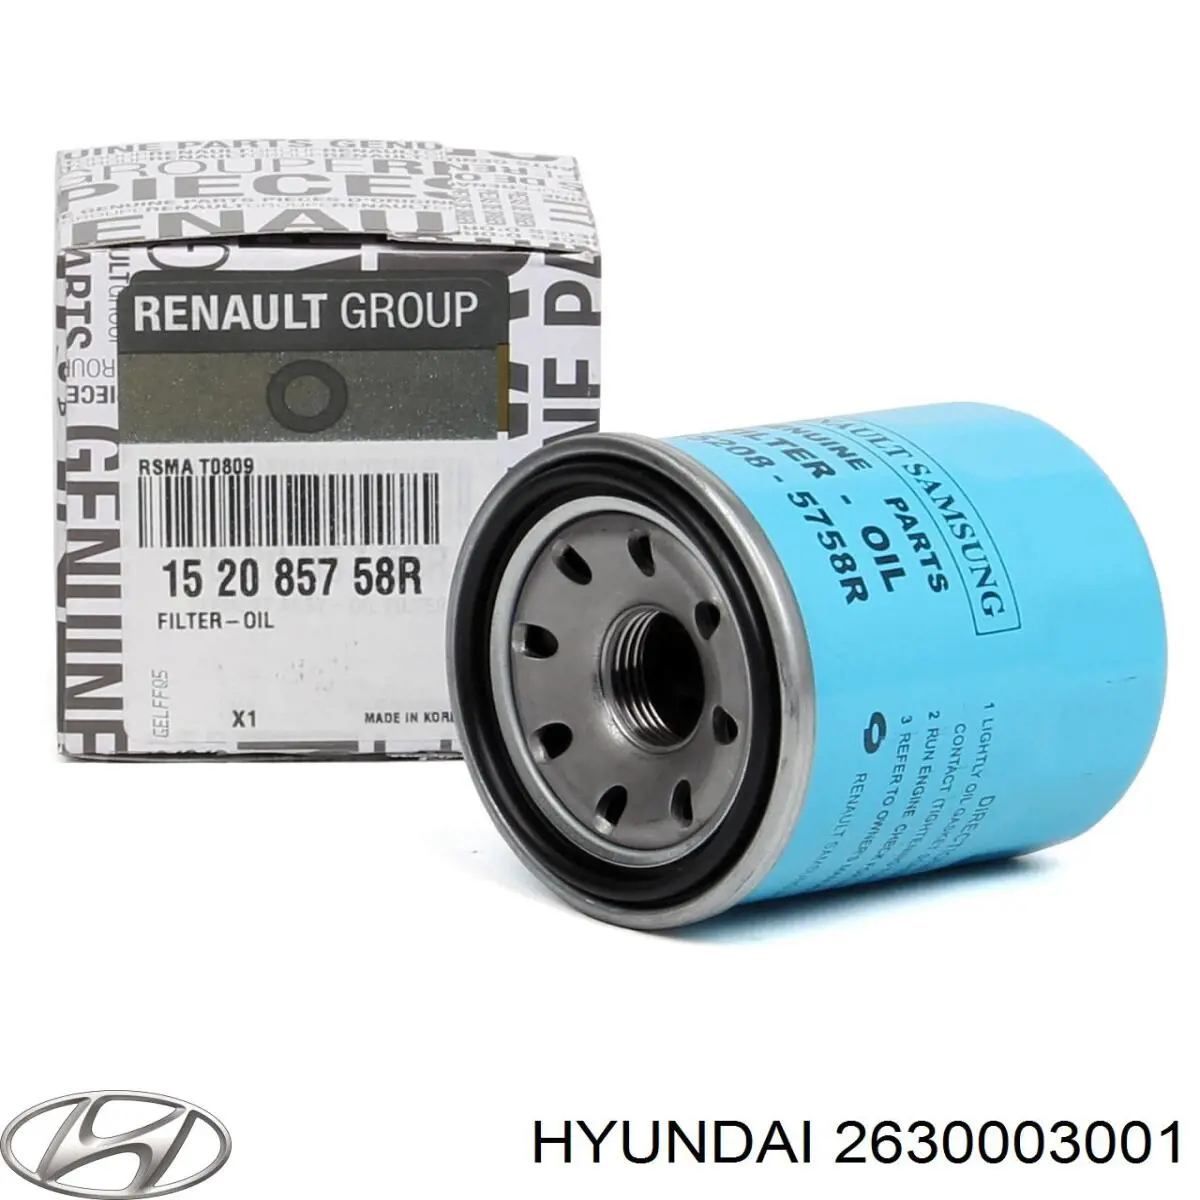 2630003001 Hyundai/Kia filtro de aceite